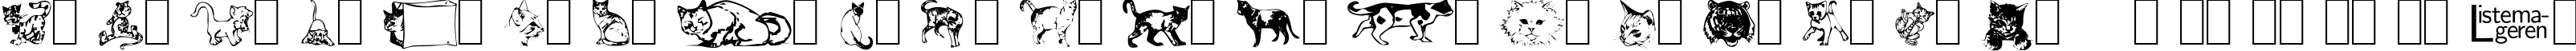 Пример написания английского алфавита шрифтом Dingbat Cats 2